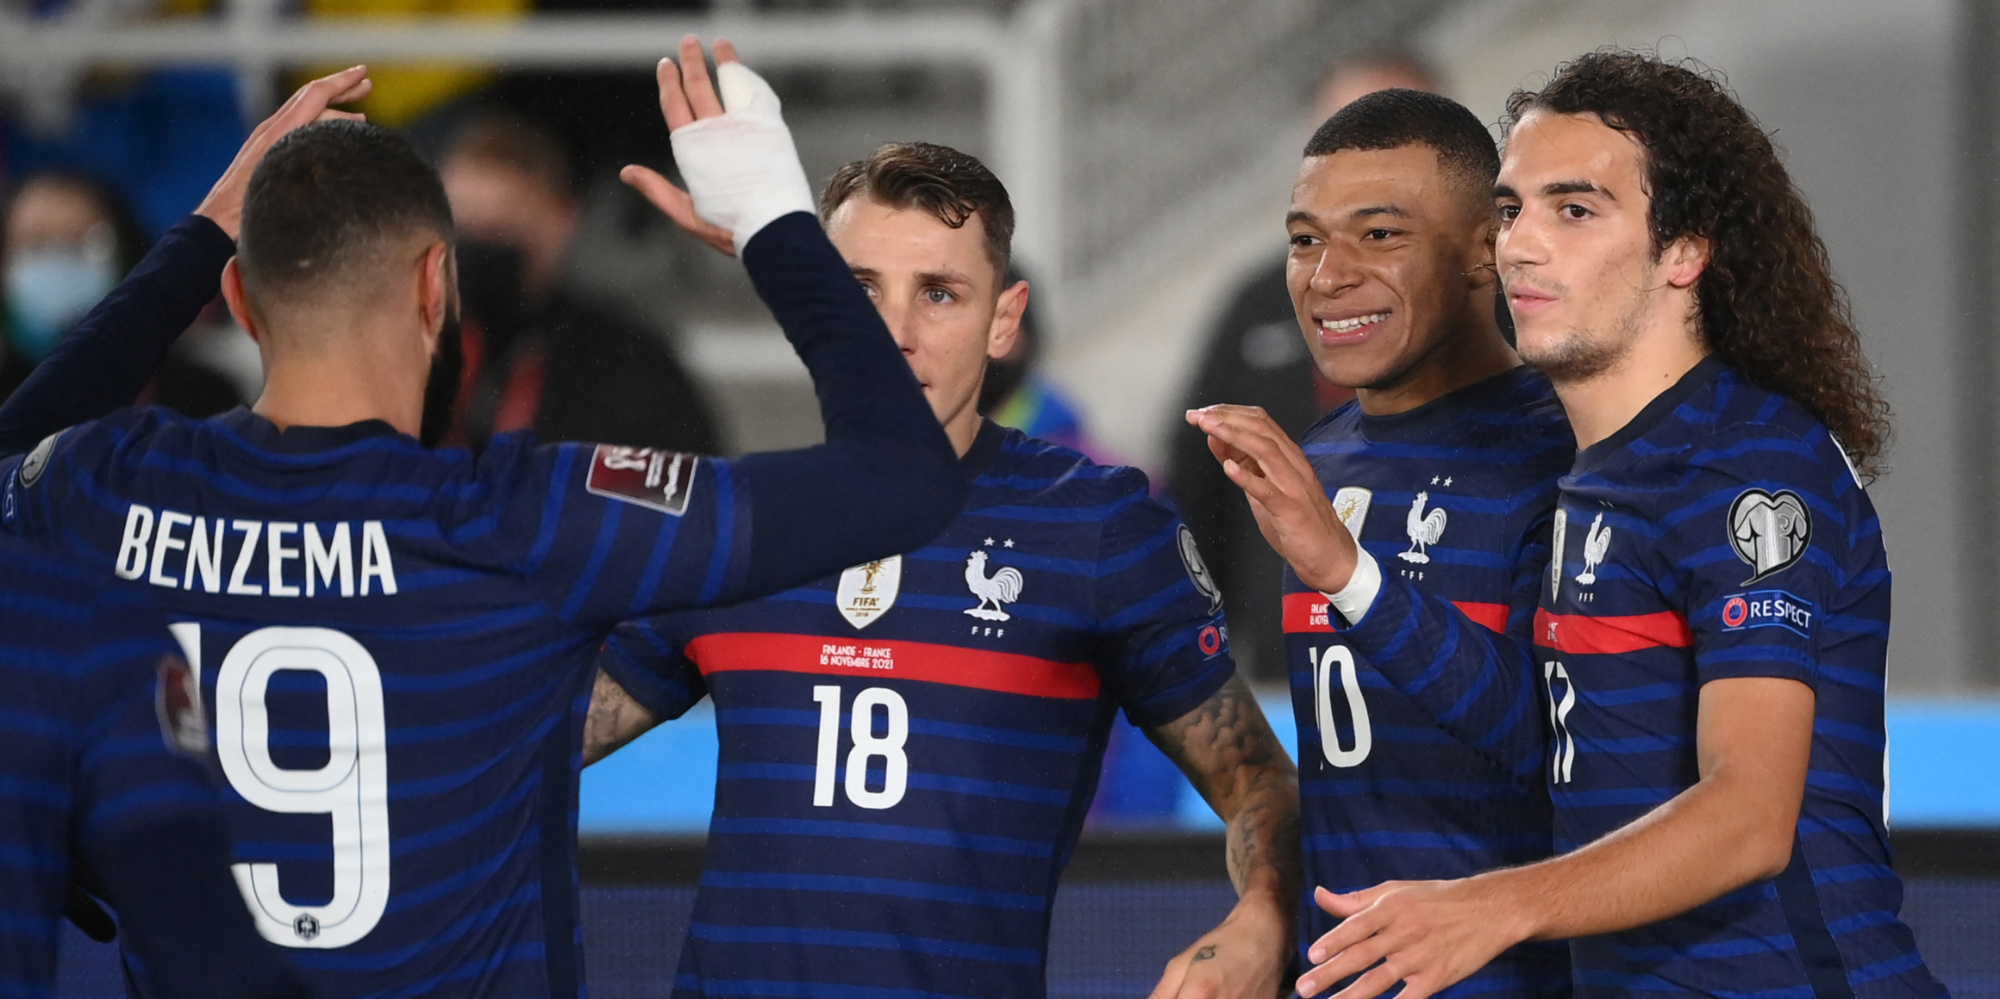 Coupe du monde 2022 deja qualifiee la France bat la Finlande 2 0